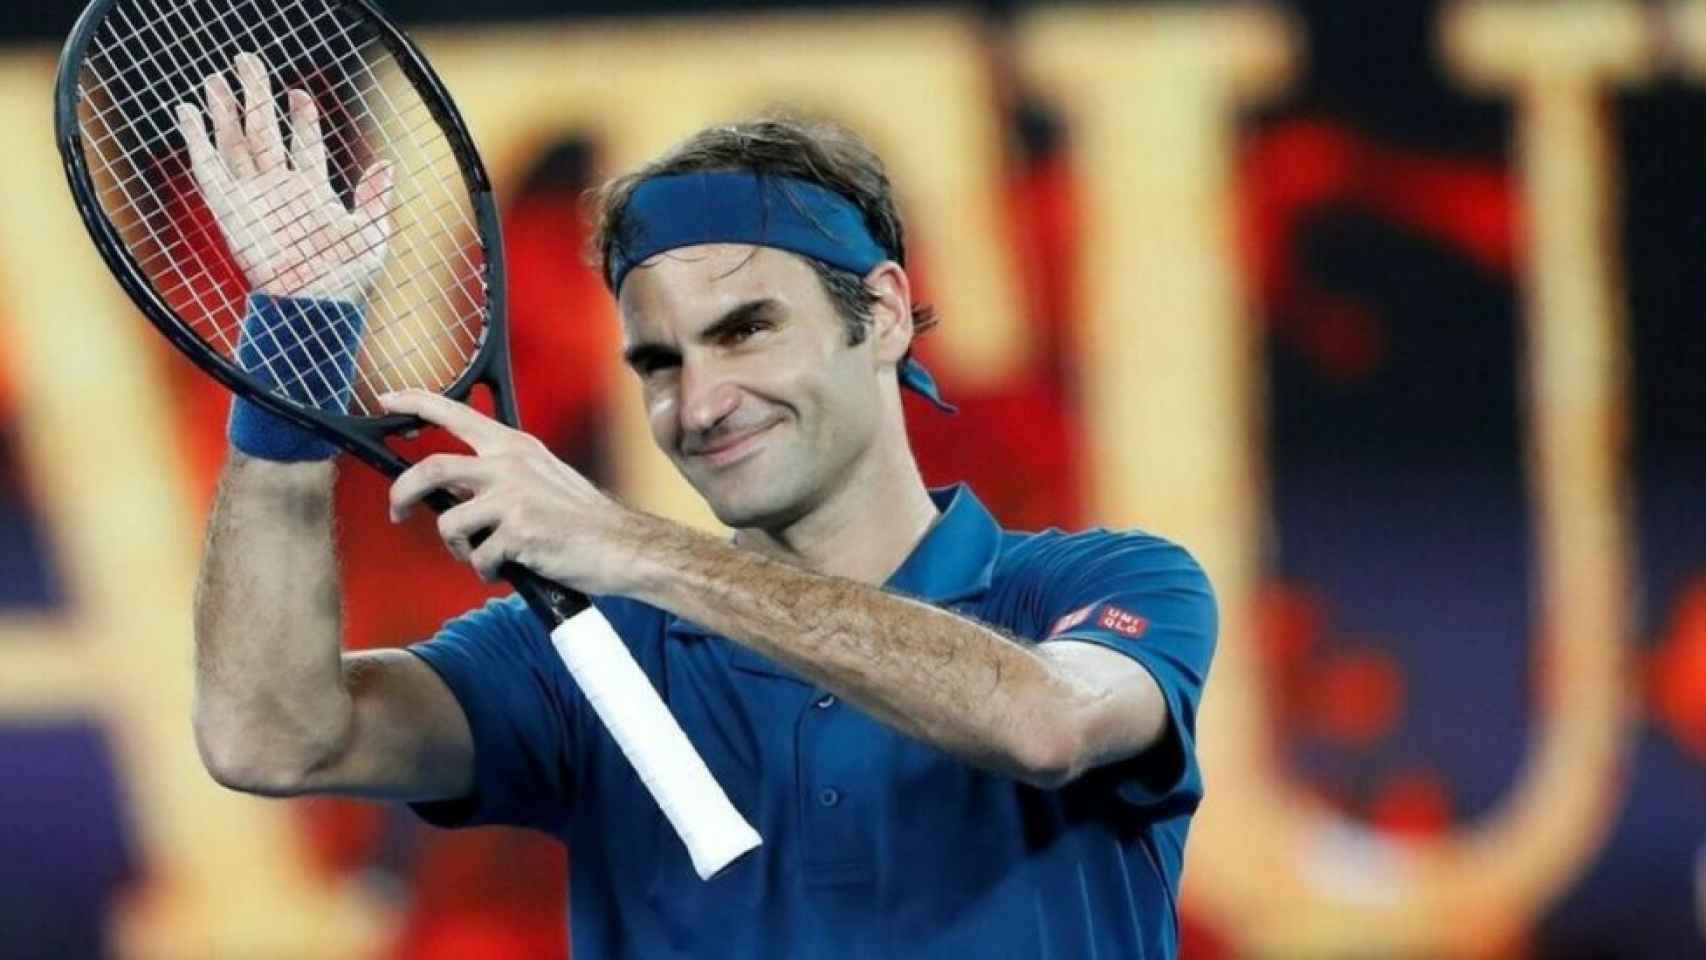 Roger Federer, esta temporada